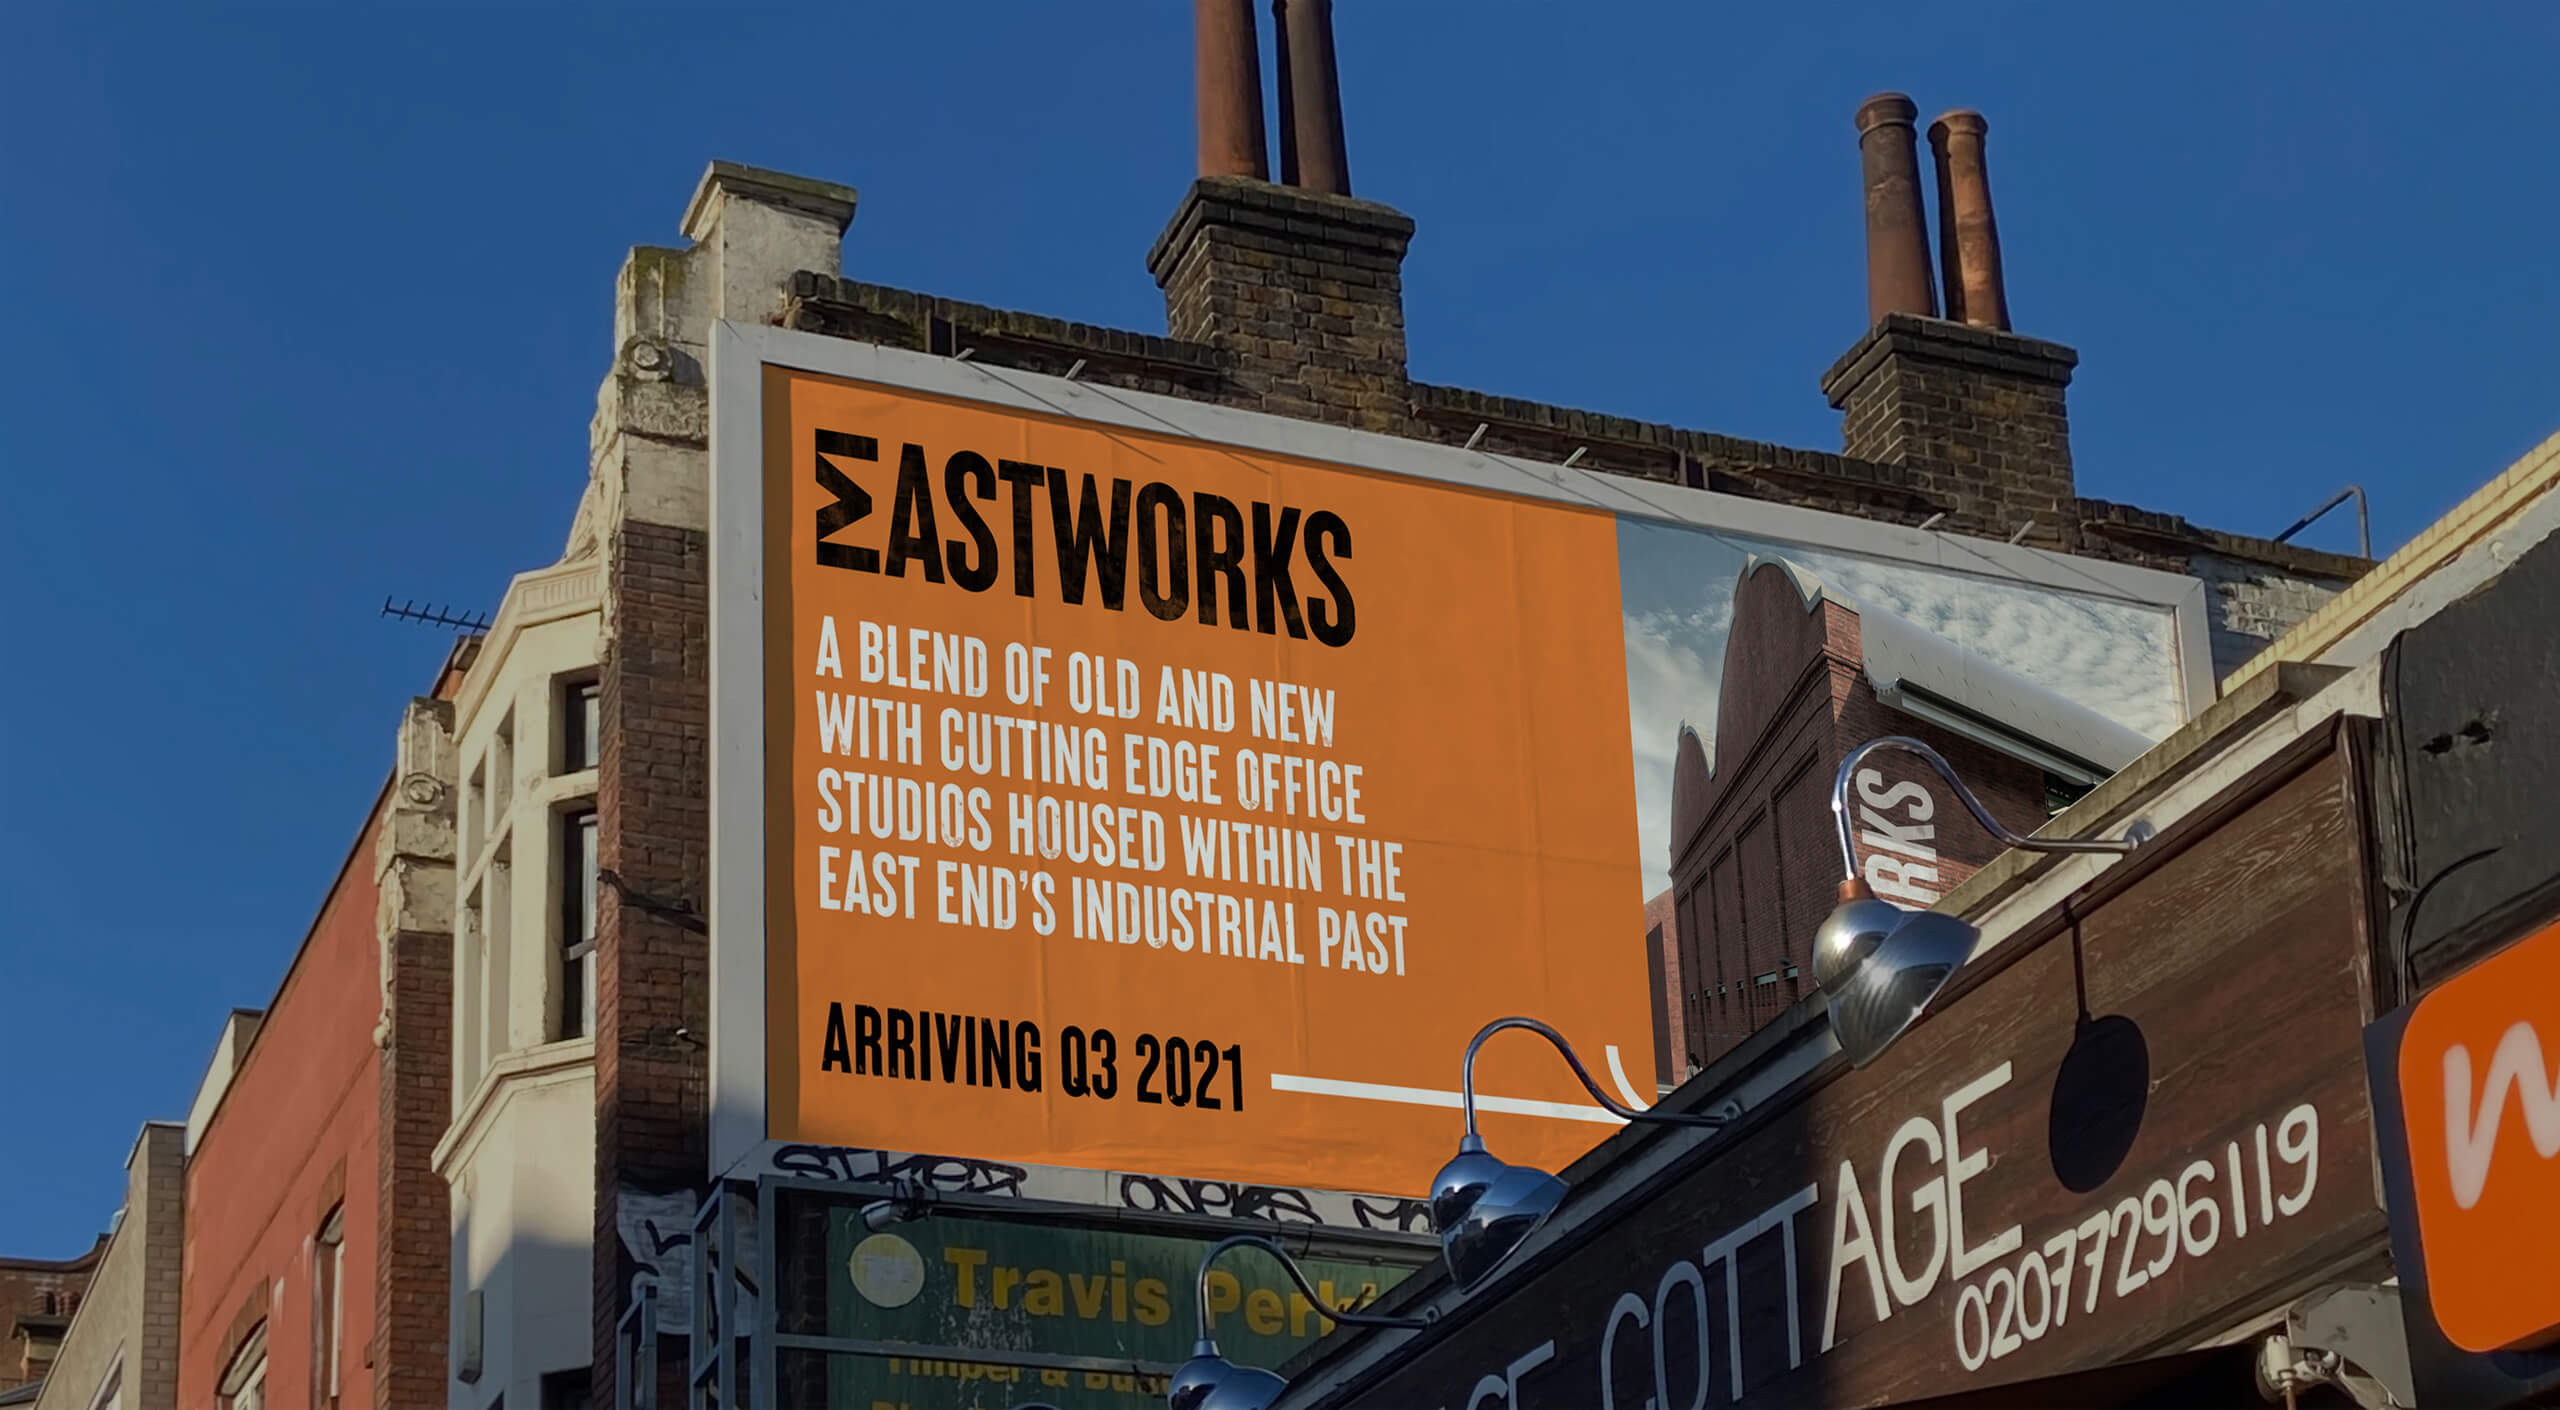 Eastworks advertising billboard